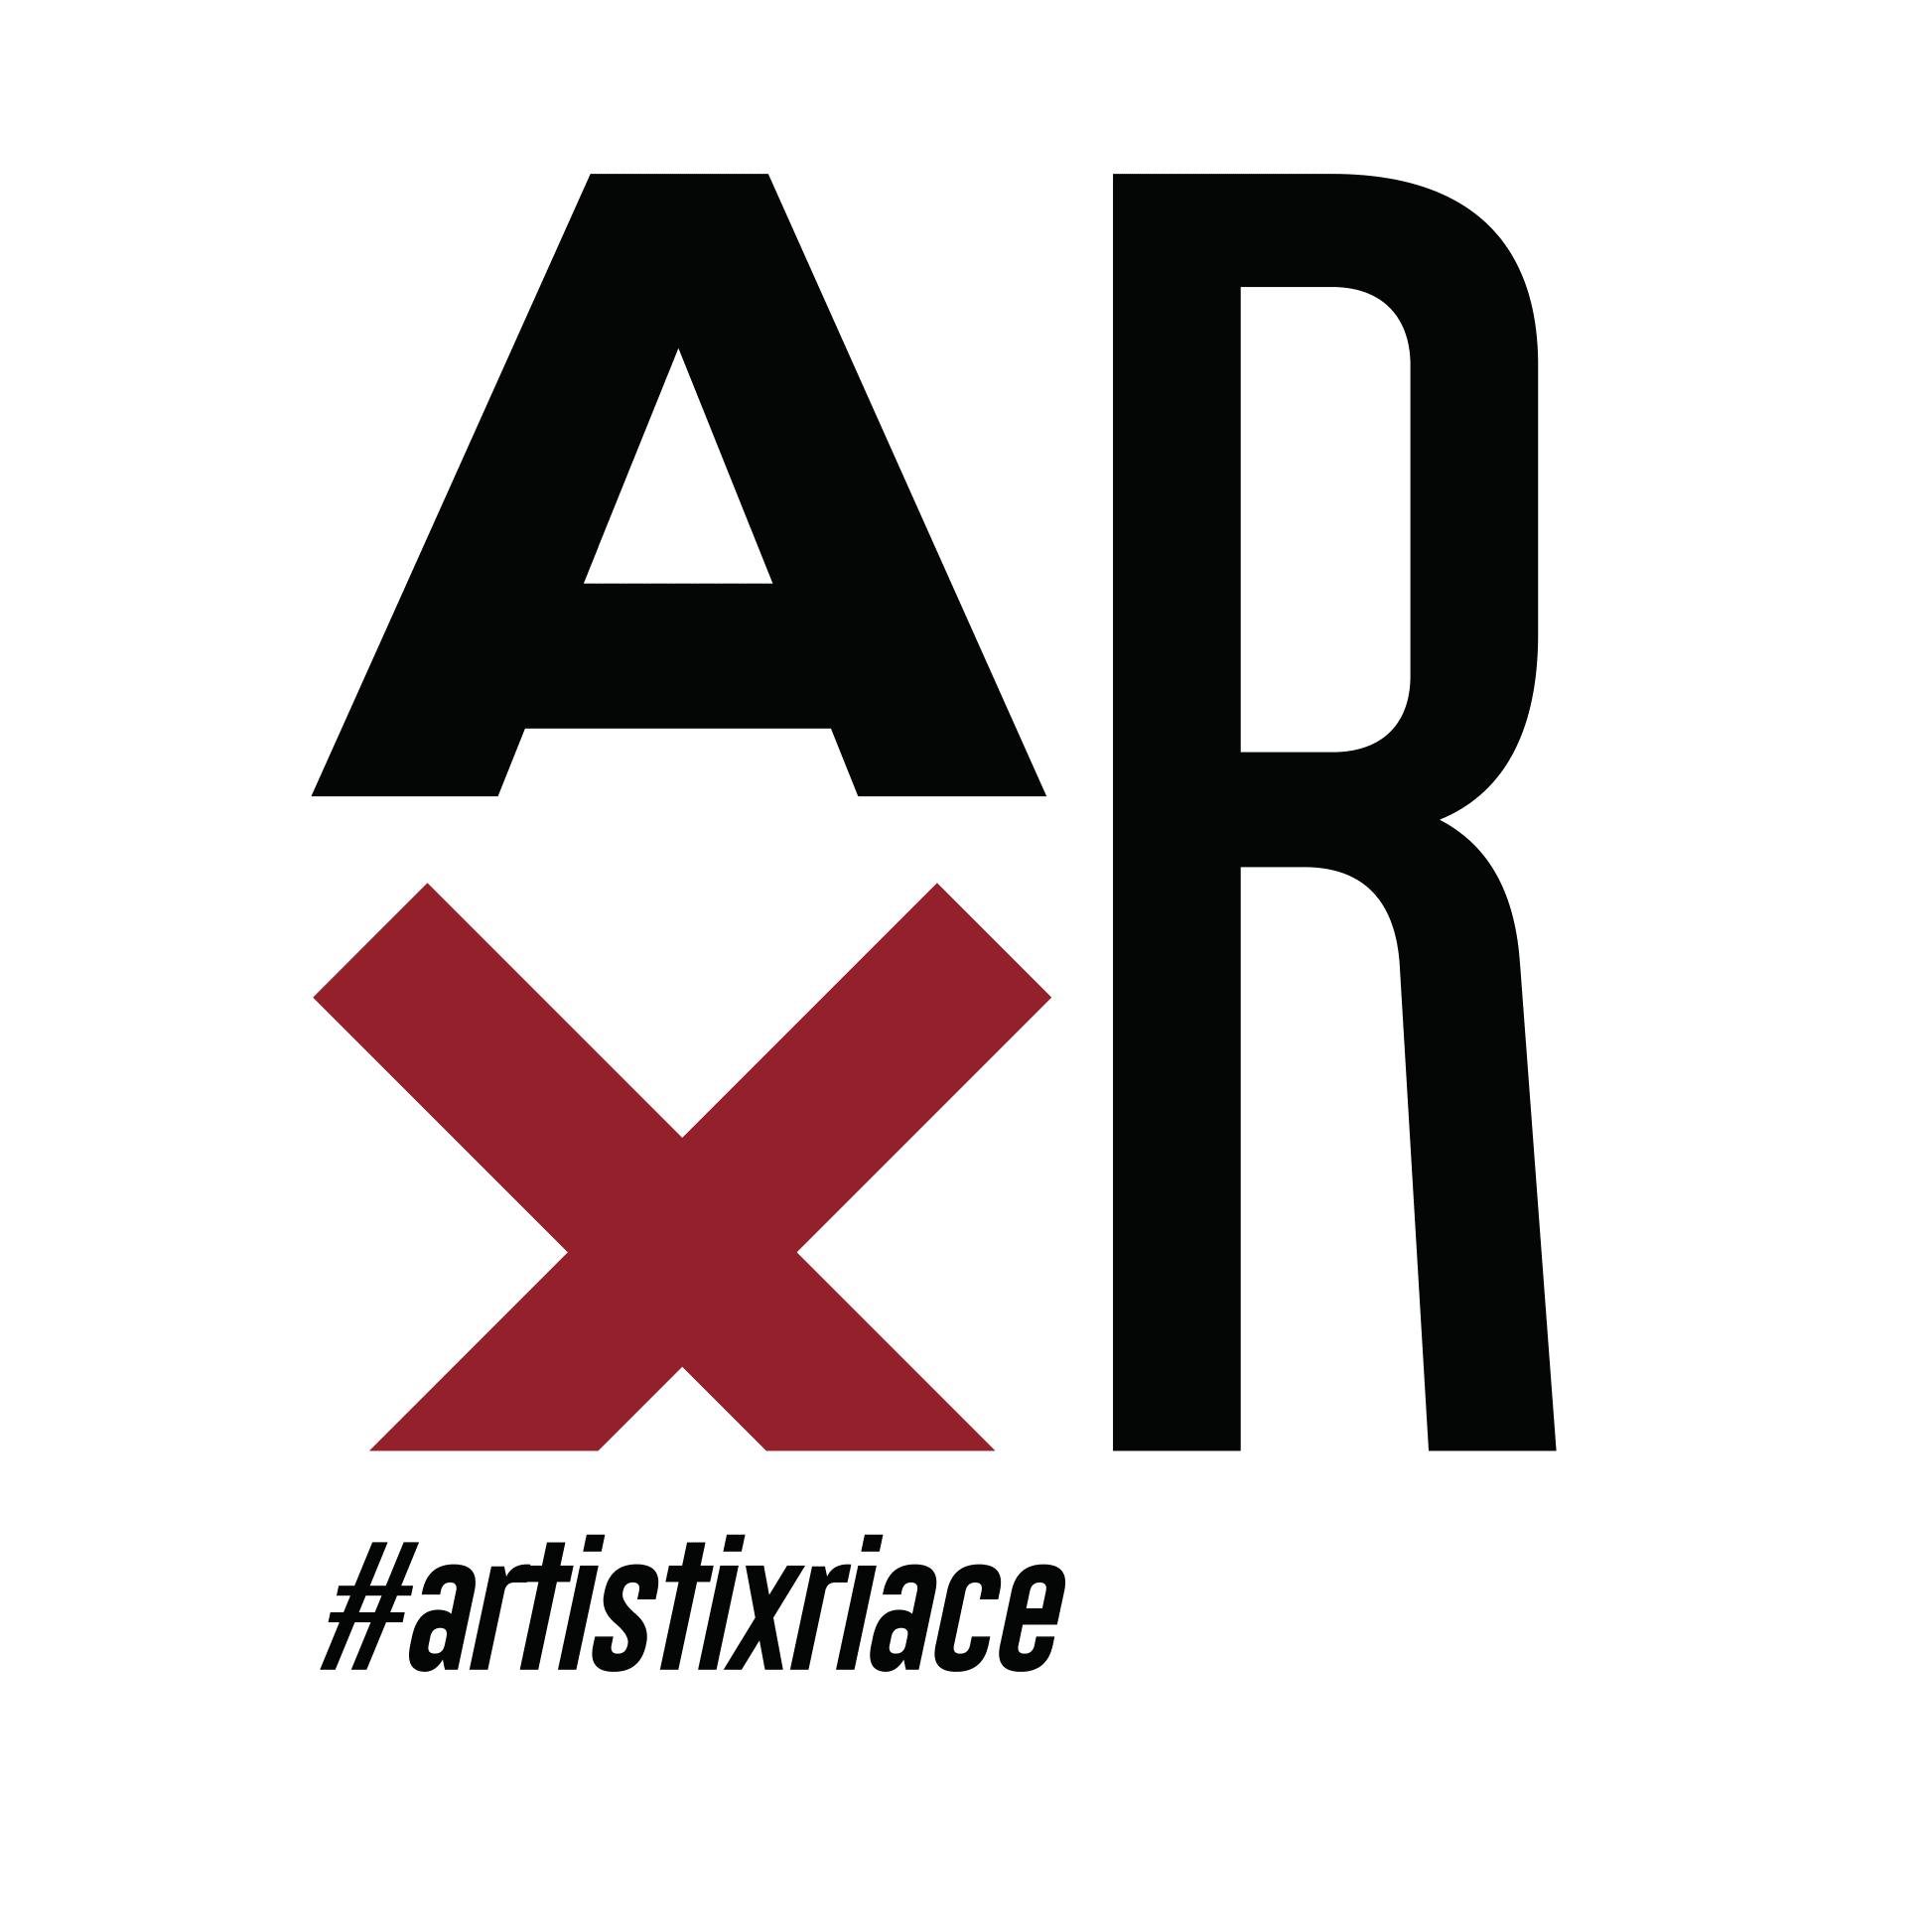 Oltre 70 artisti hanno aderito al nostro manifesto. ✍️ Sottoscrivilo anche tu! #ArtistixRiace